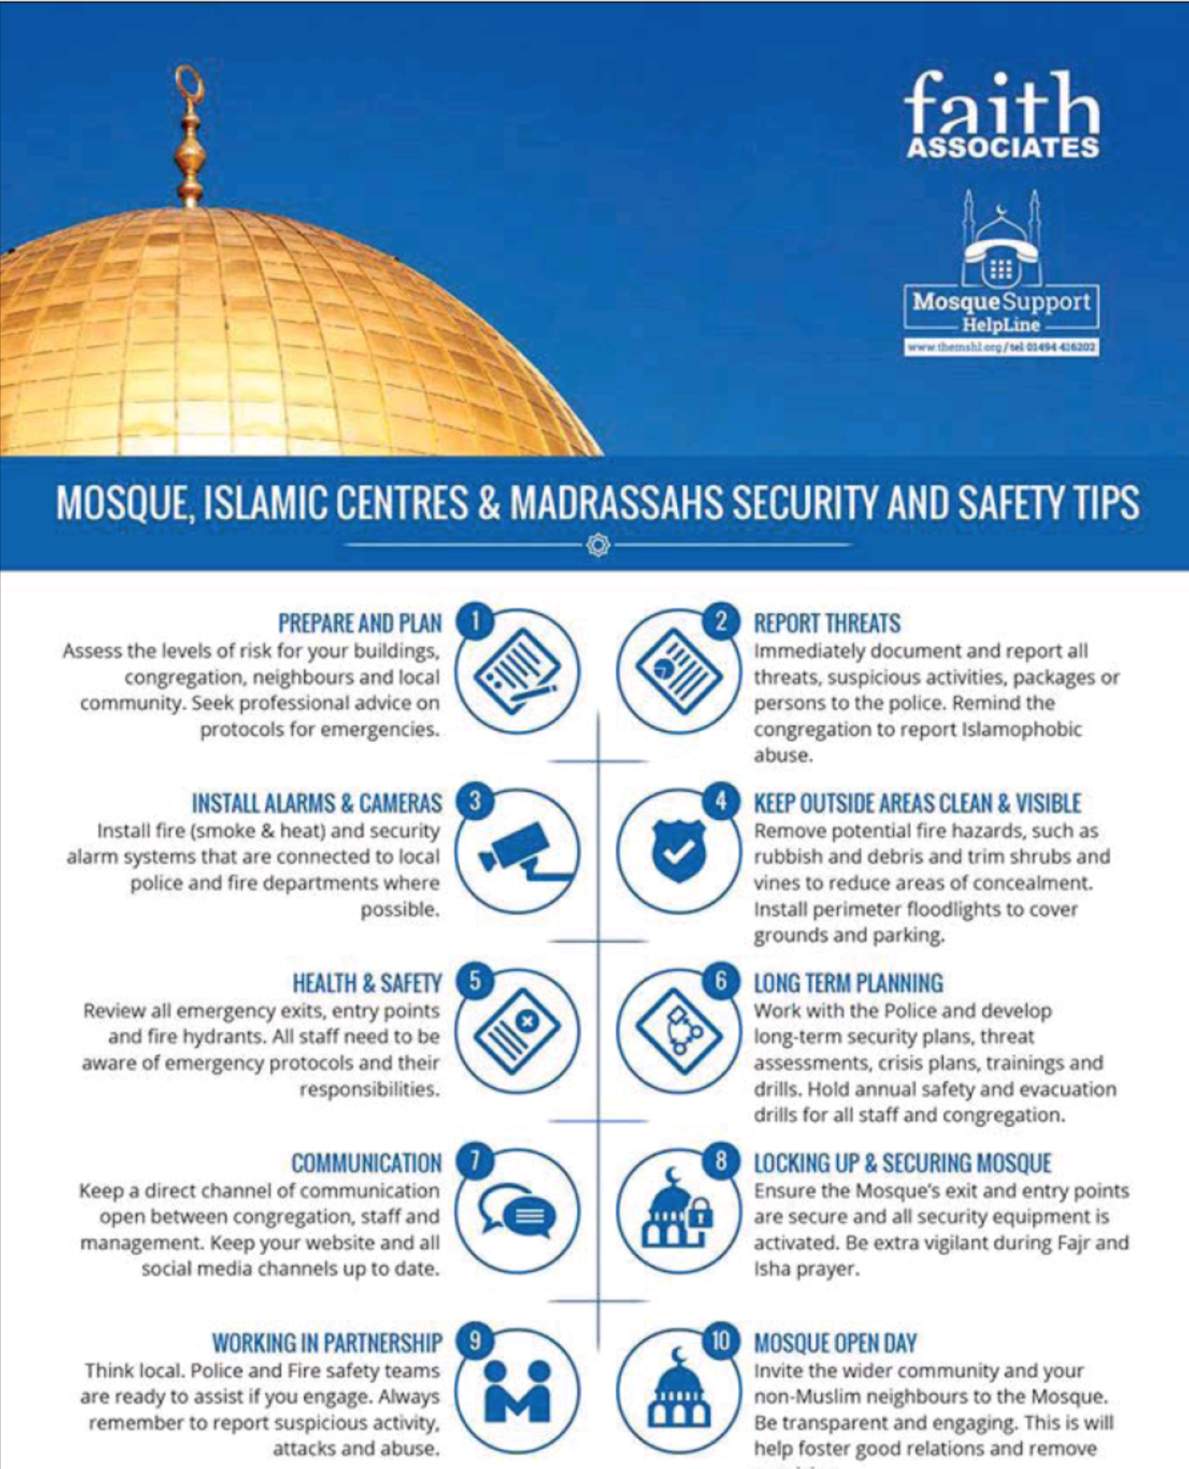 Sigurnost džamija, Preporod - Je li vrijeme da počnemo razmišljati o sigurnosti naših džamija?